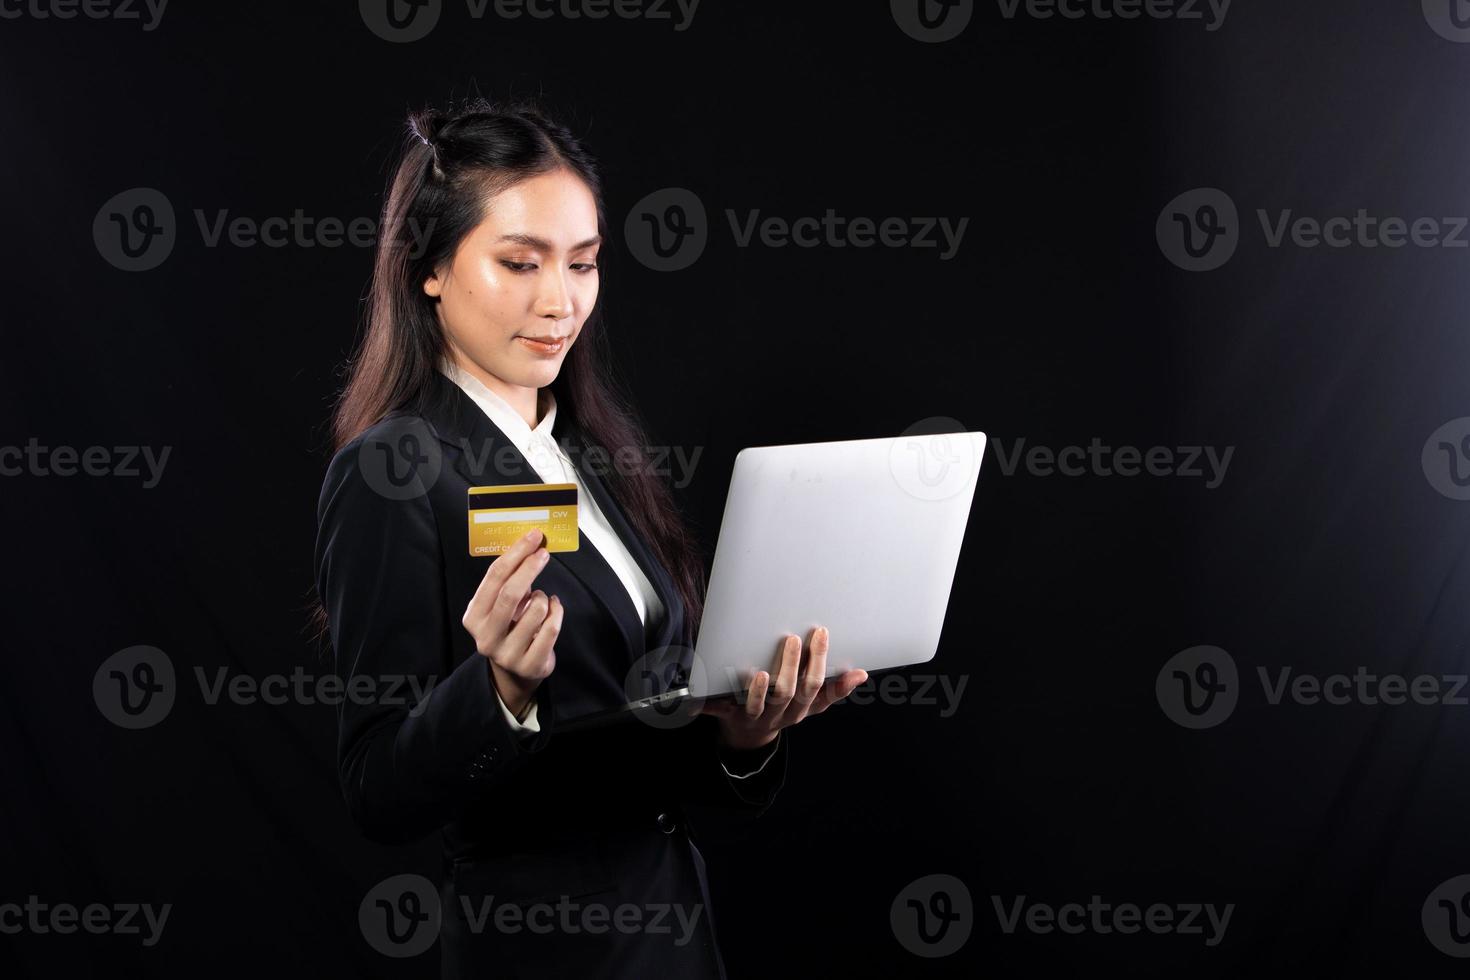 geschäftsfrau hält goldkreditkarte und kauft online mit internet-finanzbankzahlung beim kauf ein. technologie hilft person, die zu hause im e-commerce-geschäft auf handy oder laptop einkauft foto